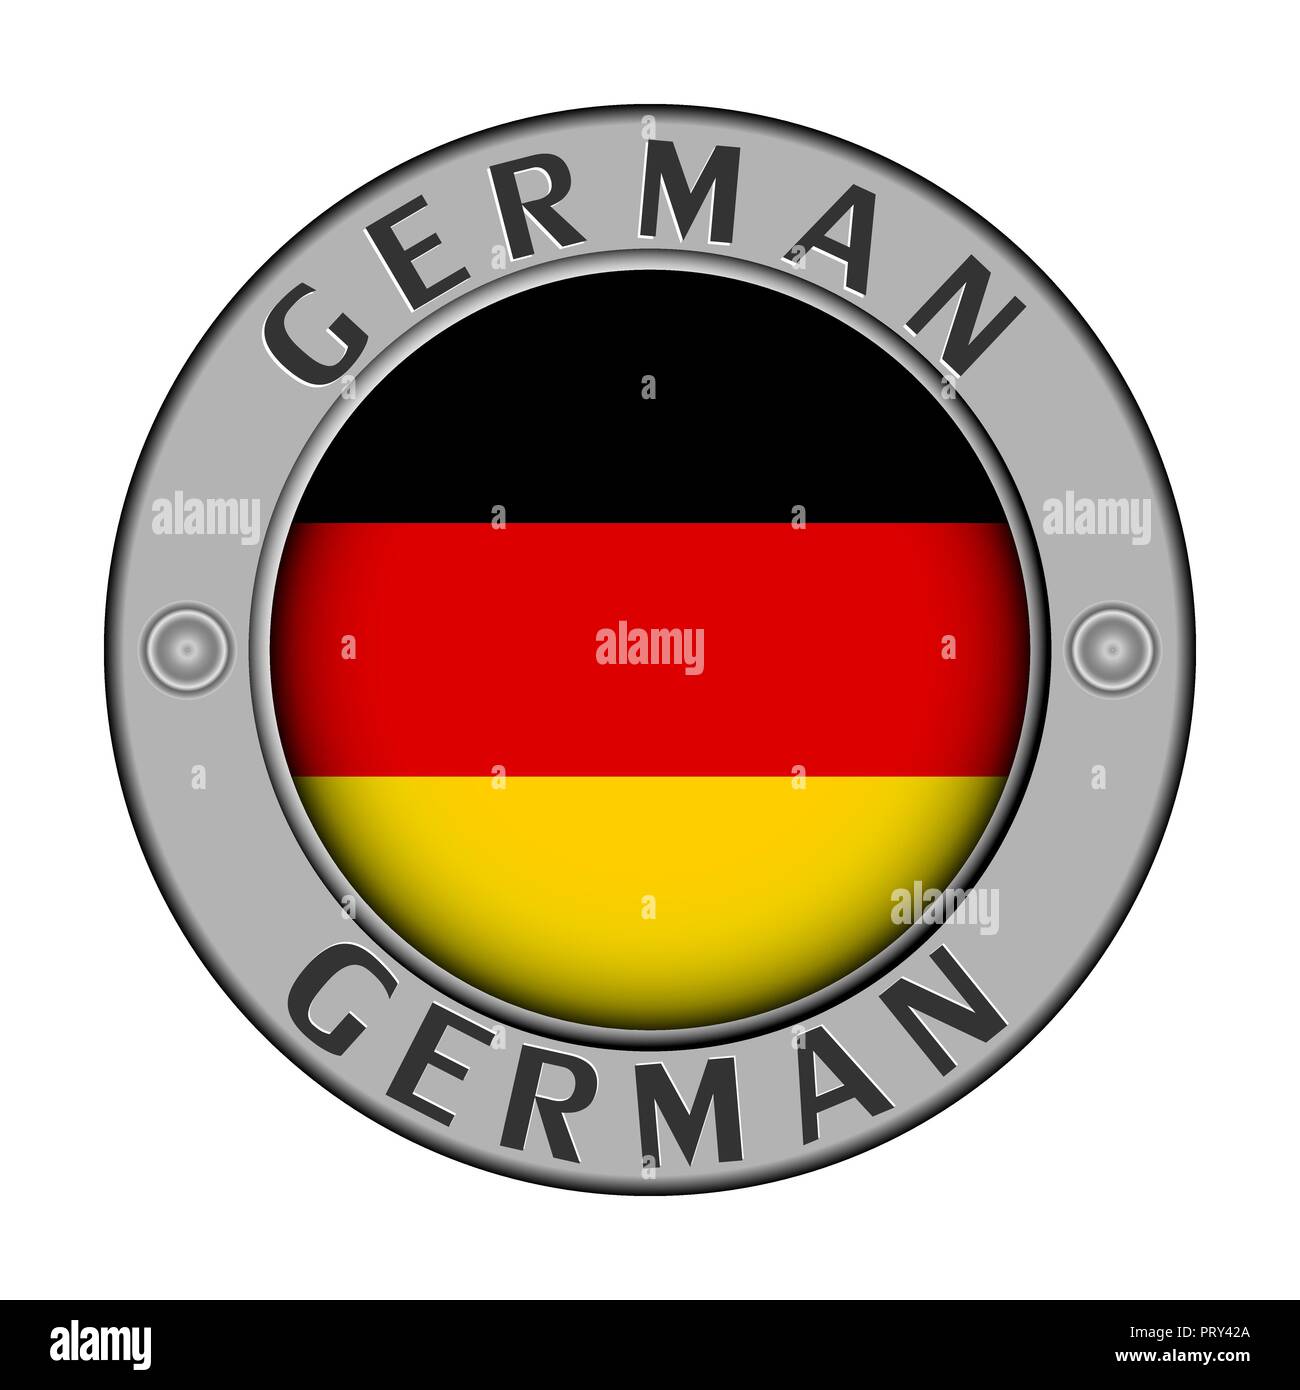 Rotondo di metallo medaglione con il nome del paese in Germania e un indicatore rotondo nel centro Illustrazione Vettoriale